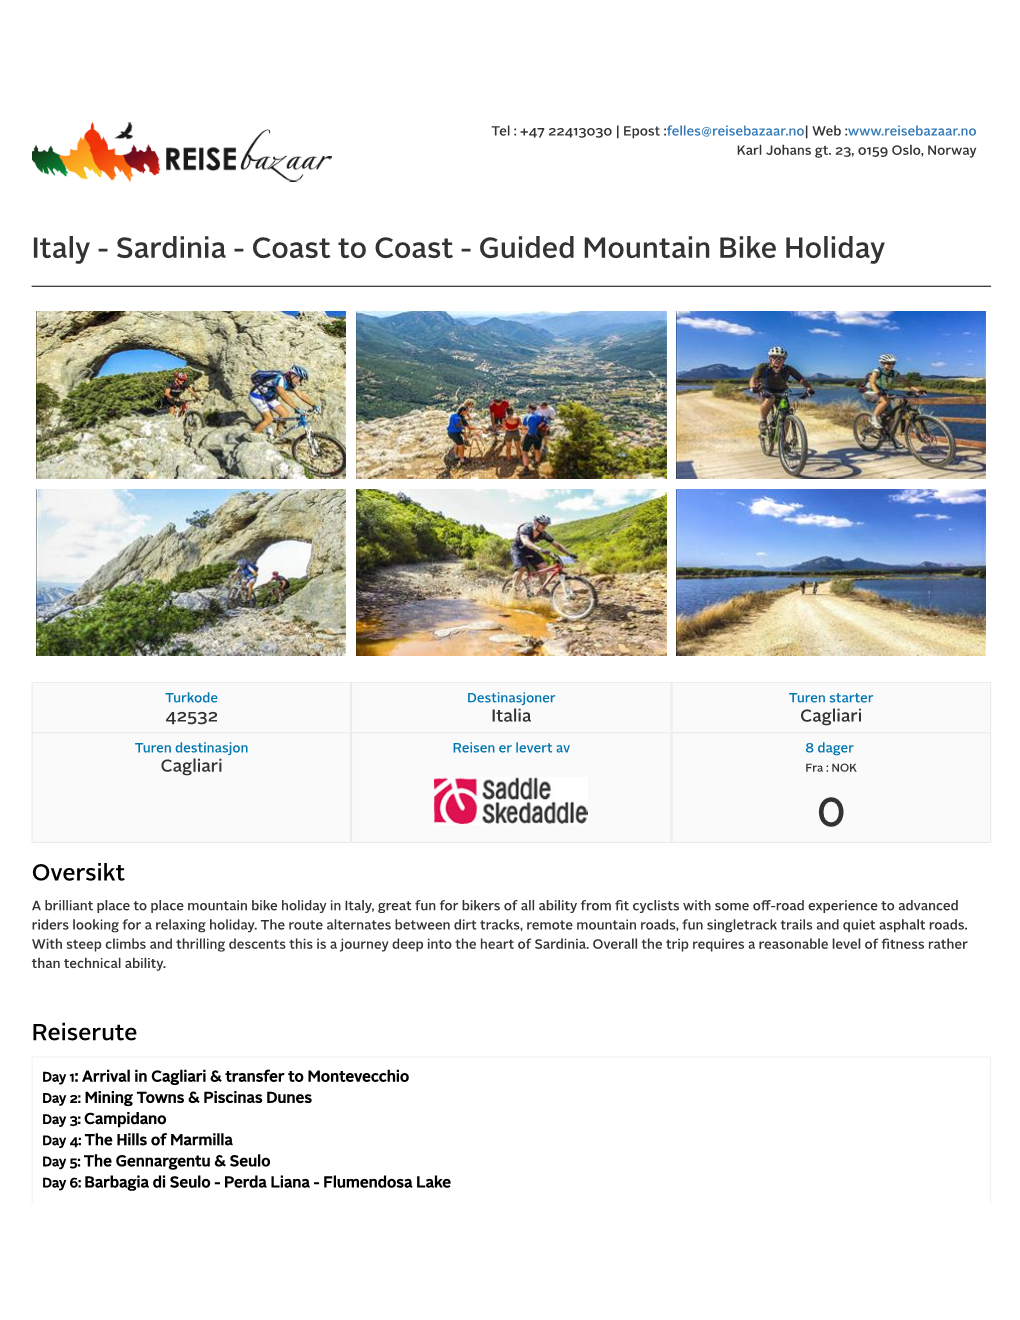 Italy - Sardinia - Coast to Coast - Guided Mountain Bike Holiday